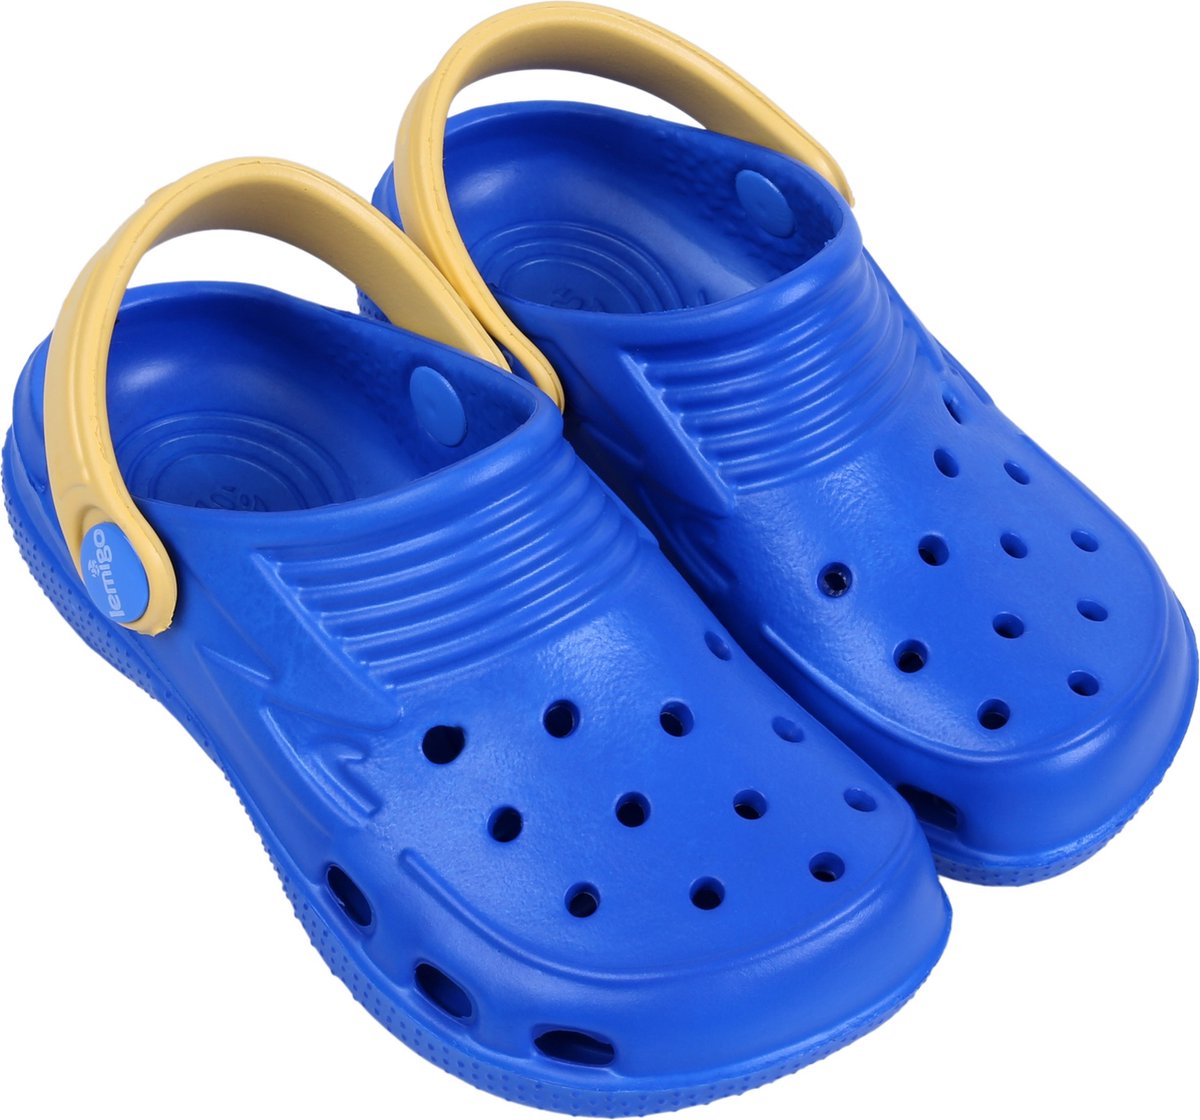 Blauwe en gele, universele crocs slippers voor kinderen van hoogwaardig rubber - LEMIGO / 25